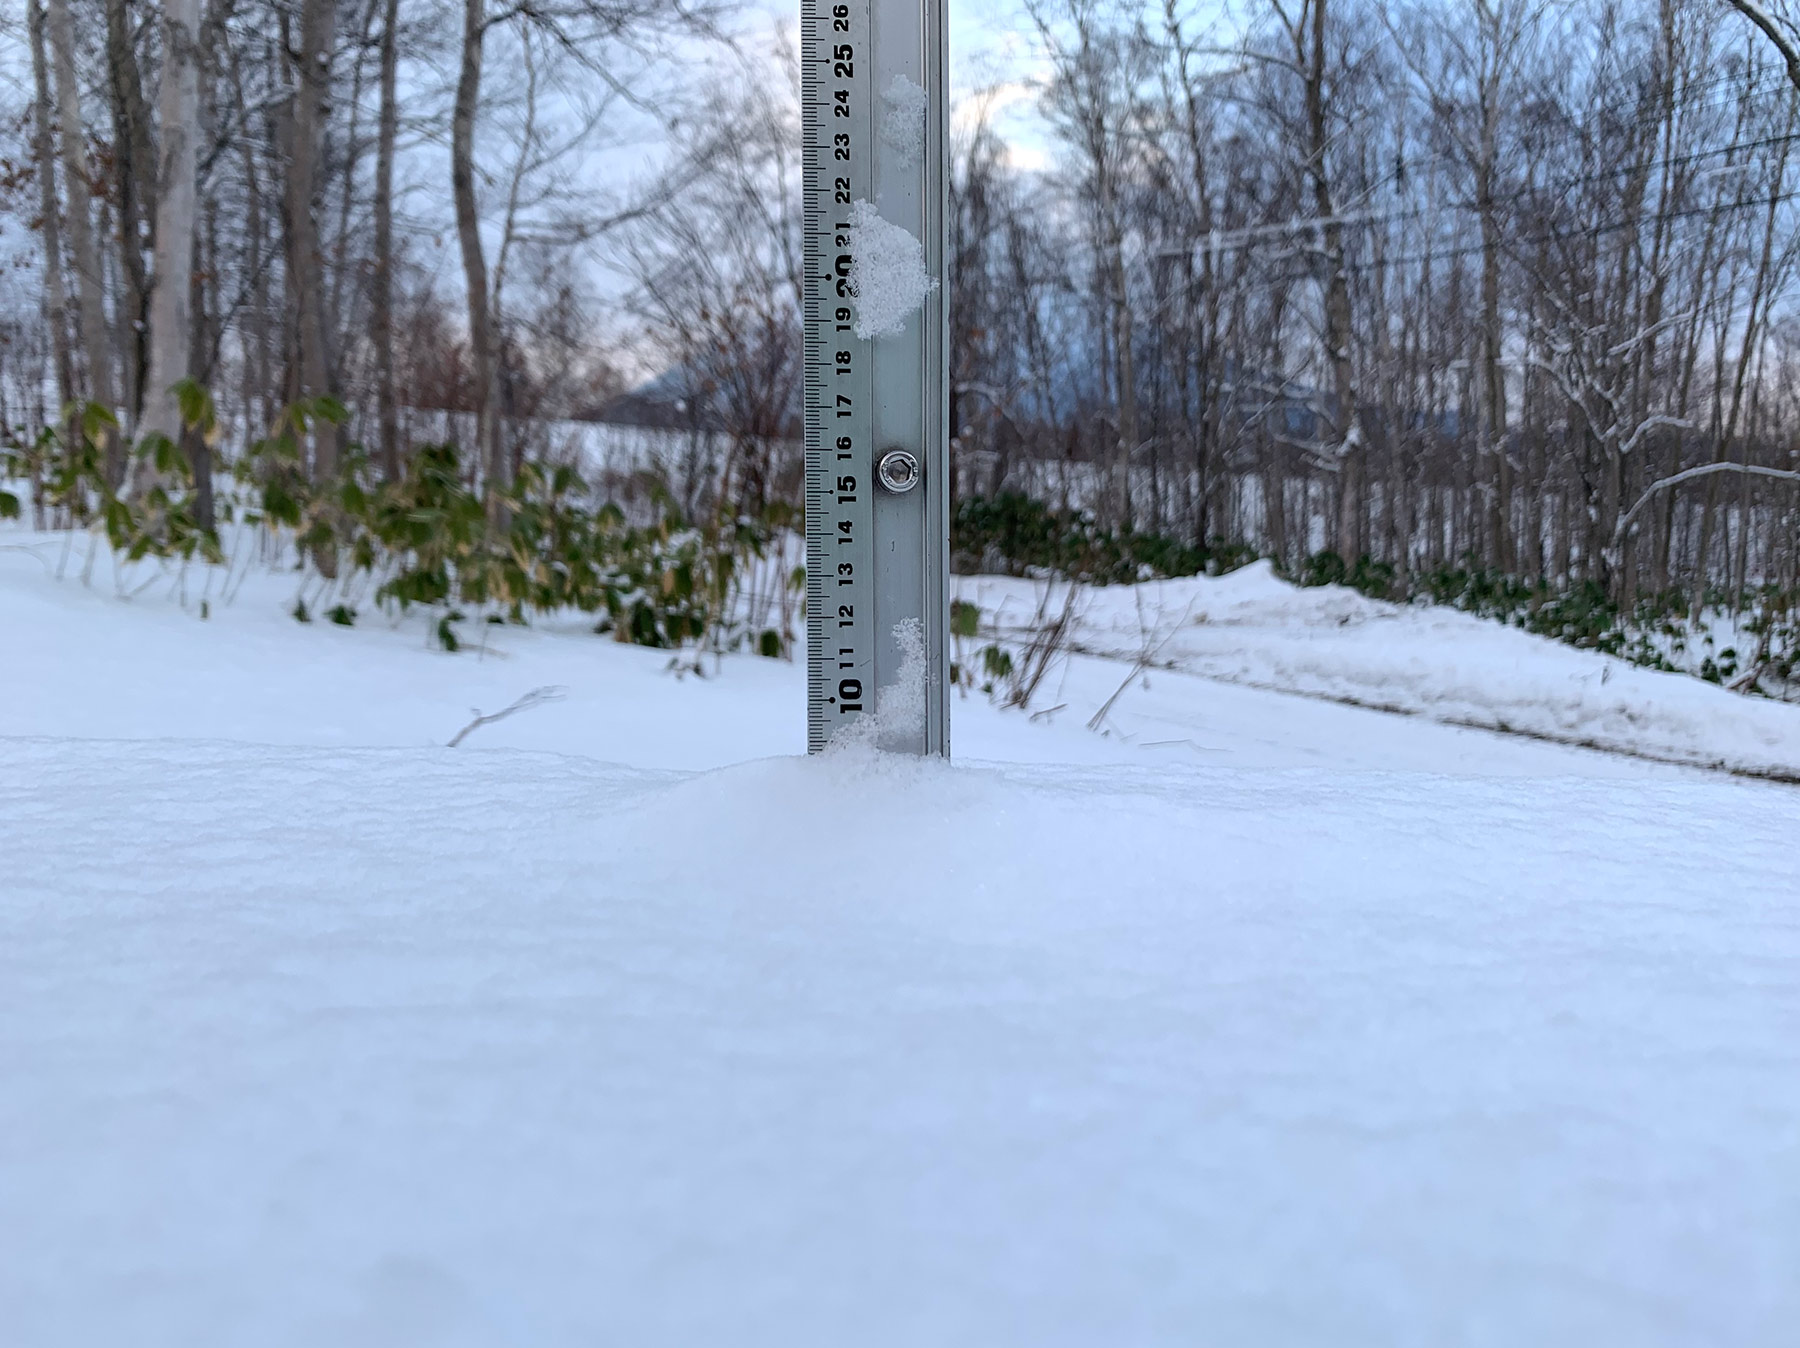 Niseko Snow Report, 22 December 2019